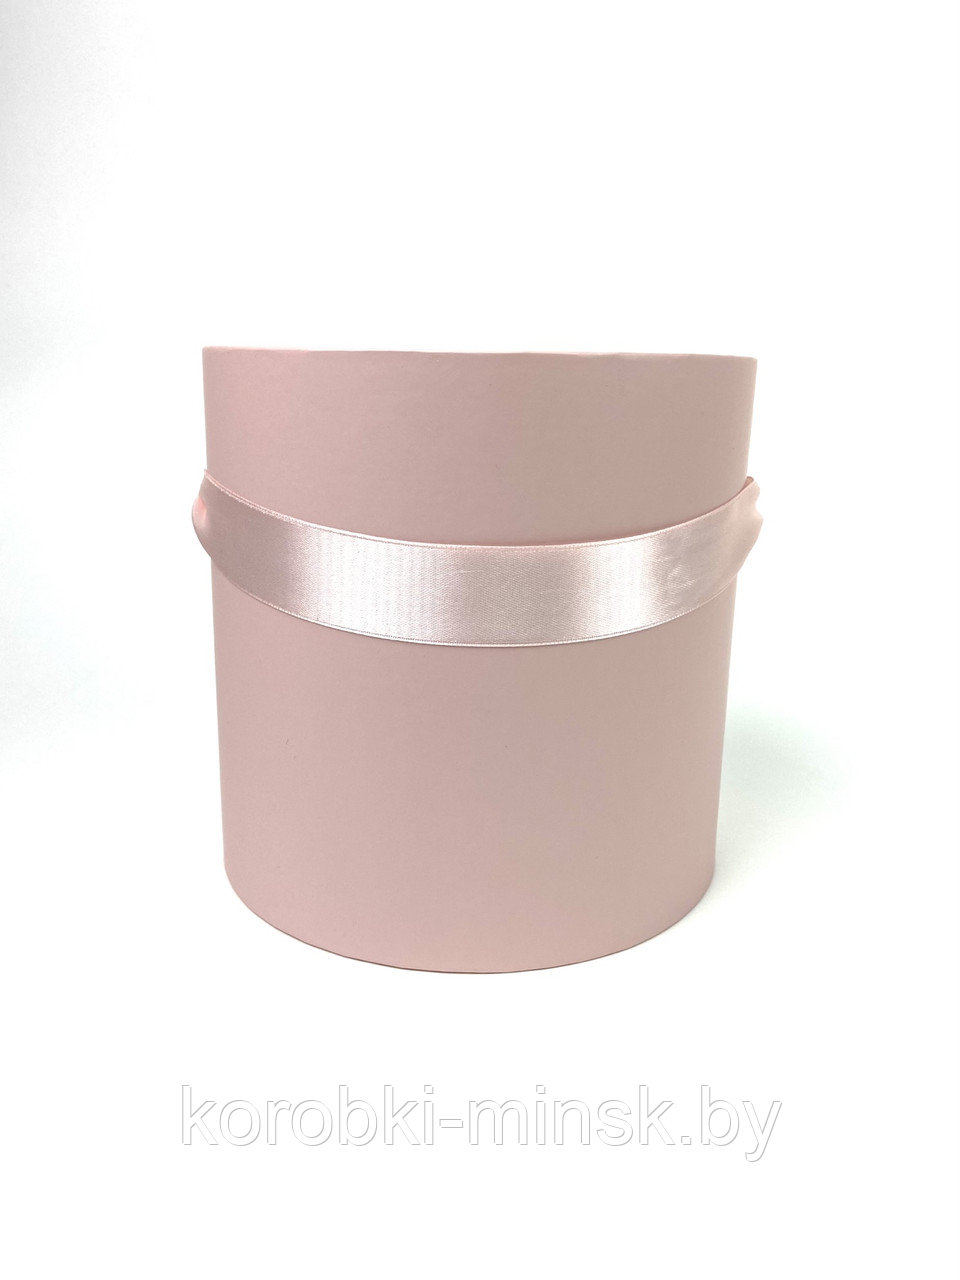 Шляпная коробка эконом D18 H18 без крышки,цвет Пыльно-розовый.